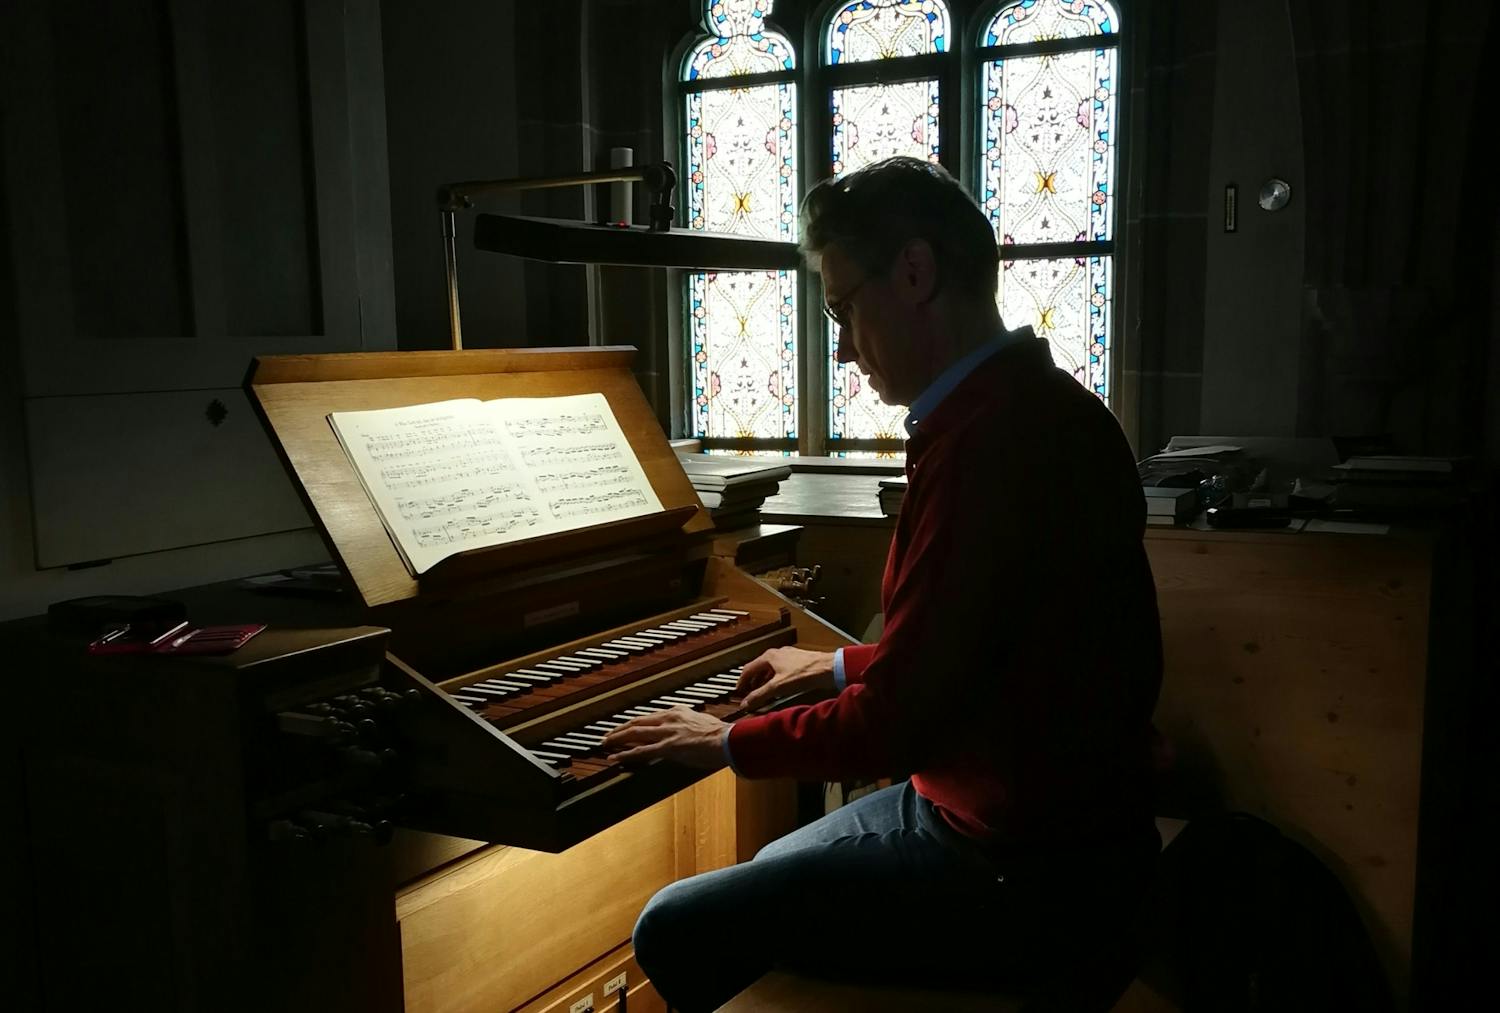 En kirkemusiker sitter og spiller på et orgel. Bak ham ser vi kirkekunst.